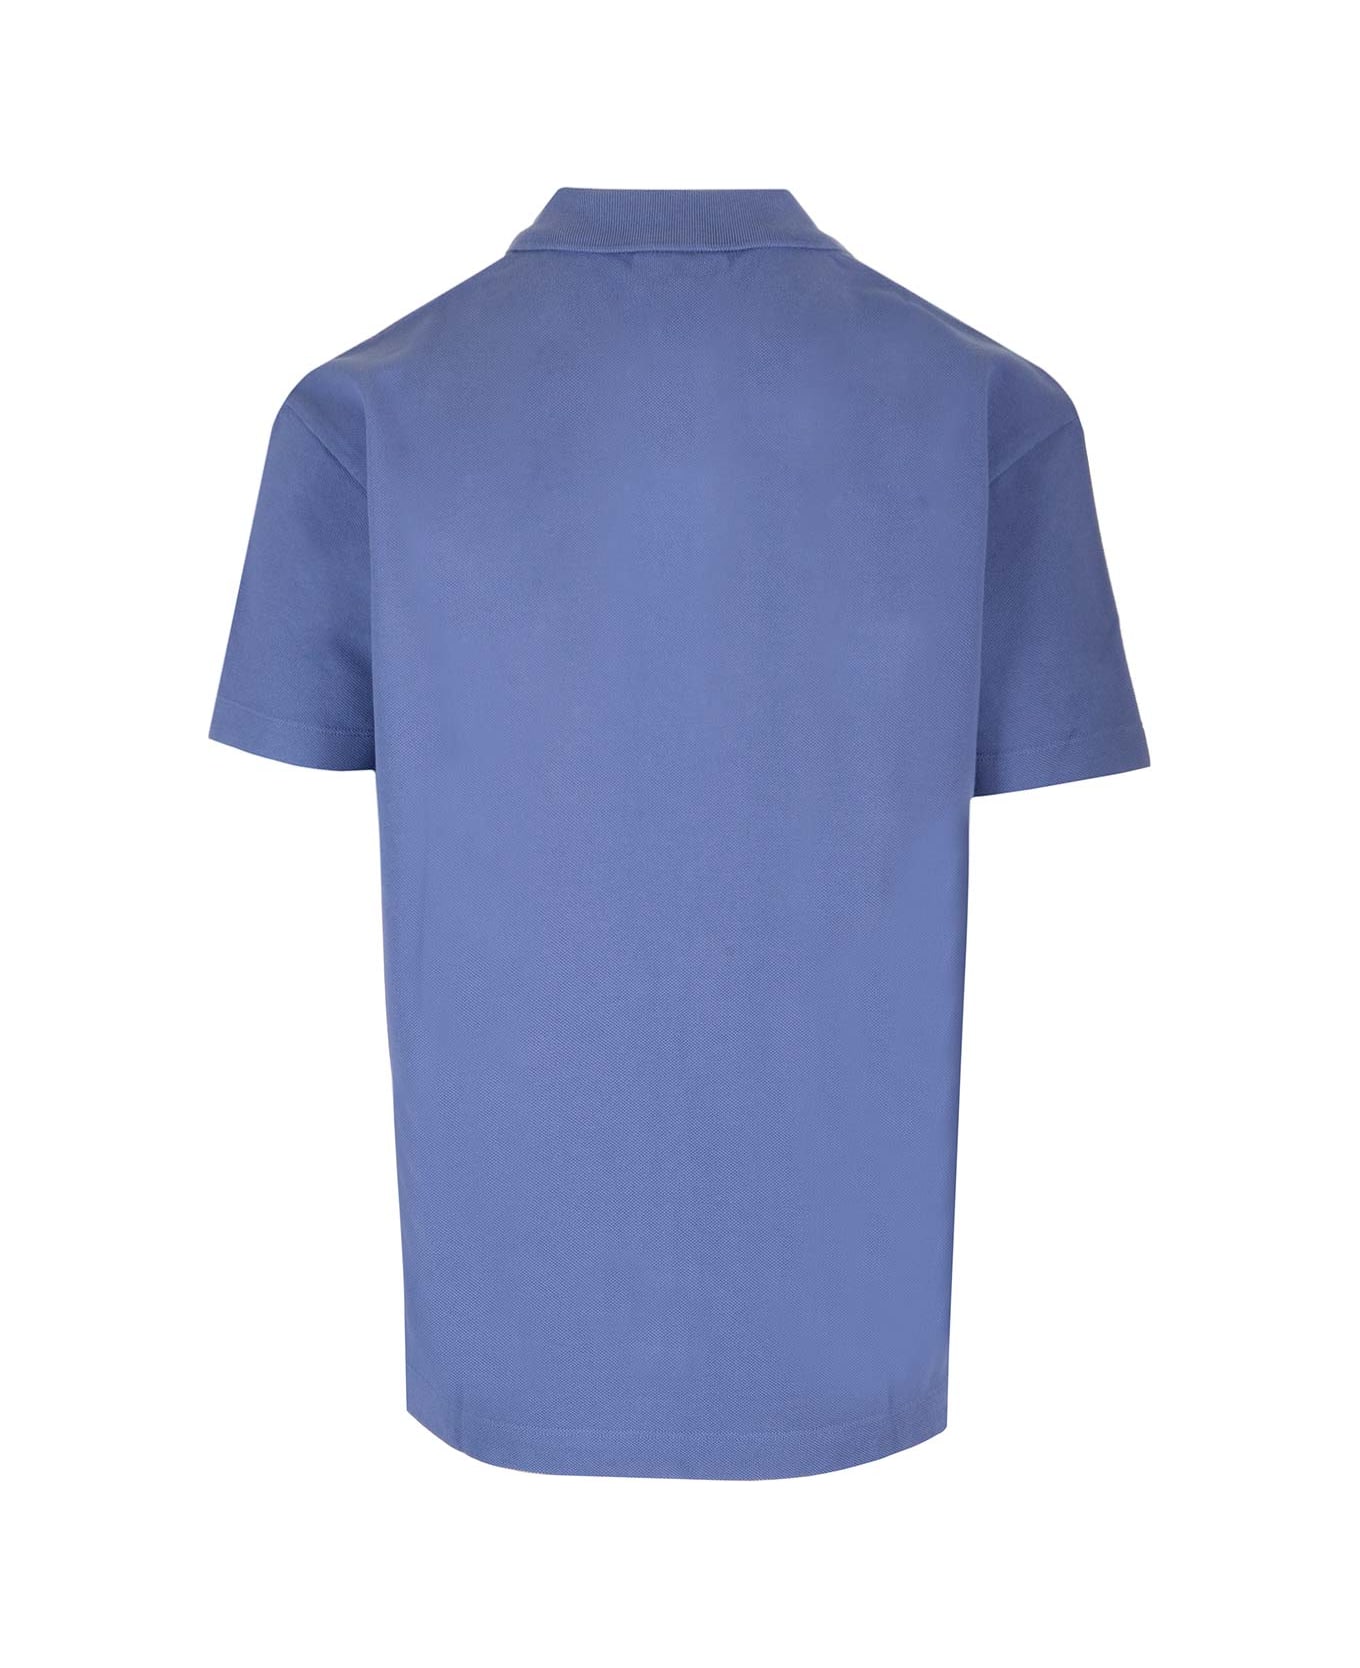 Maison Kitsuné Comfort Fit Polo Shirt - Storm Blue